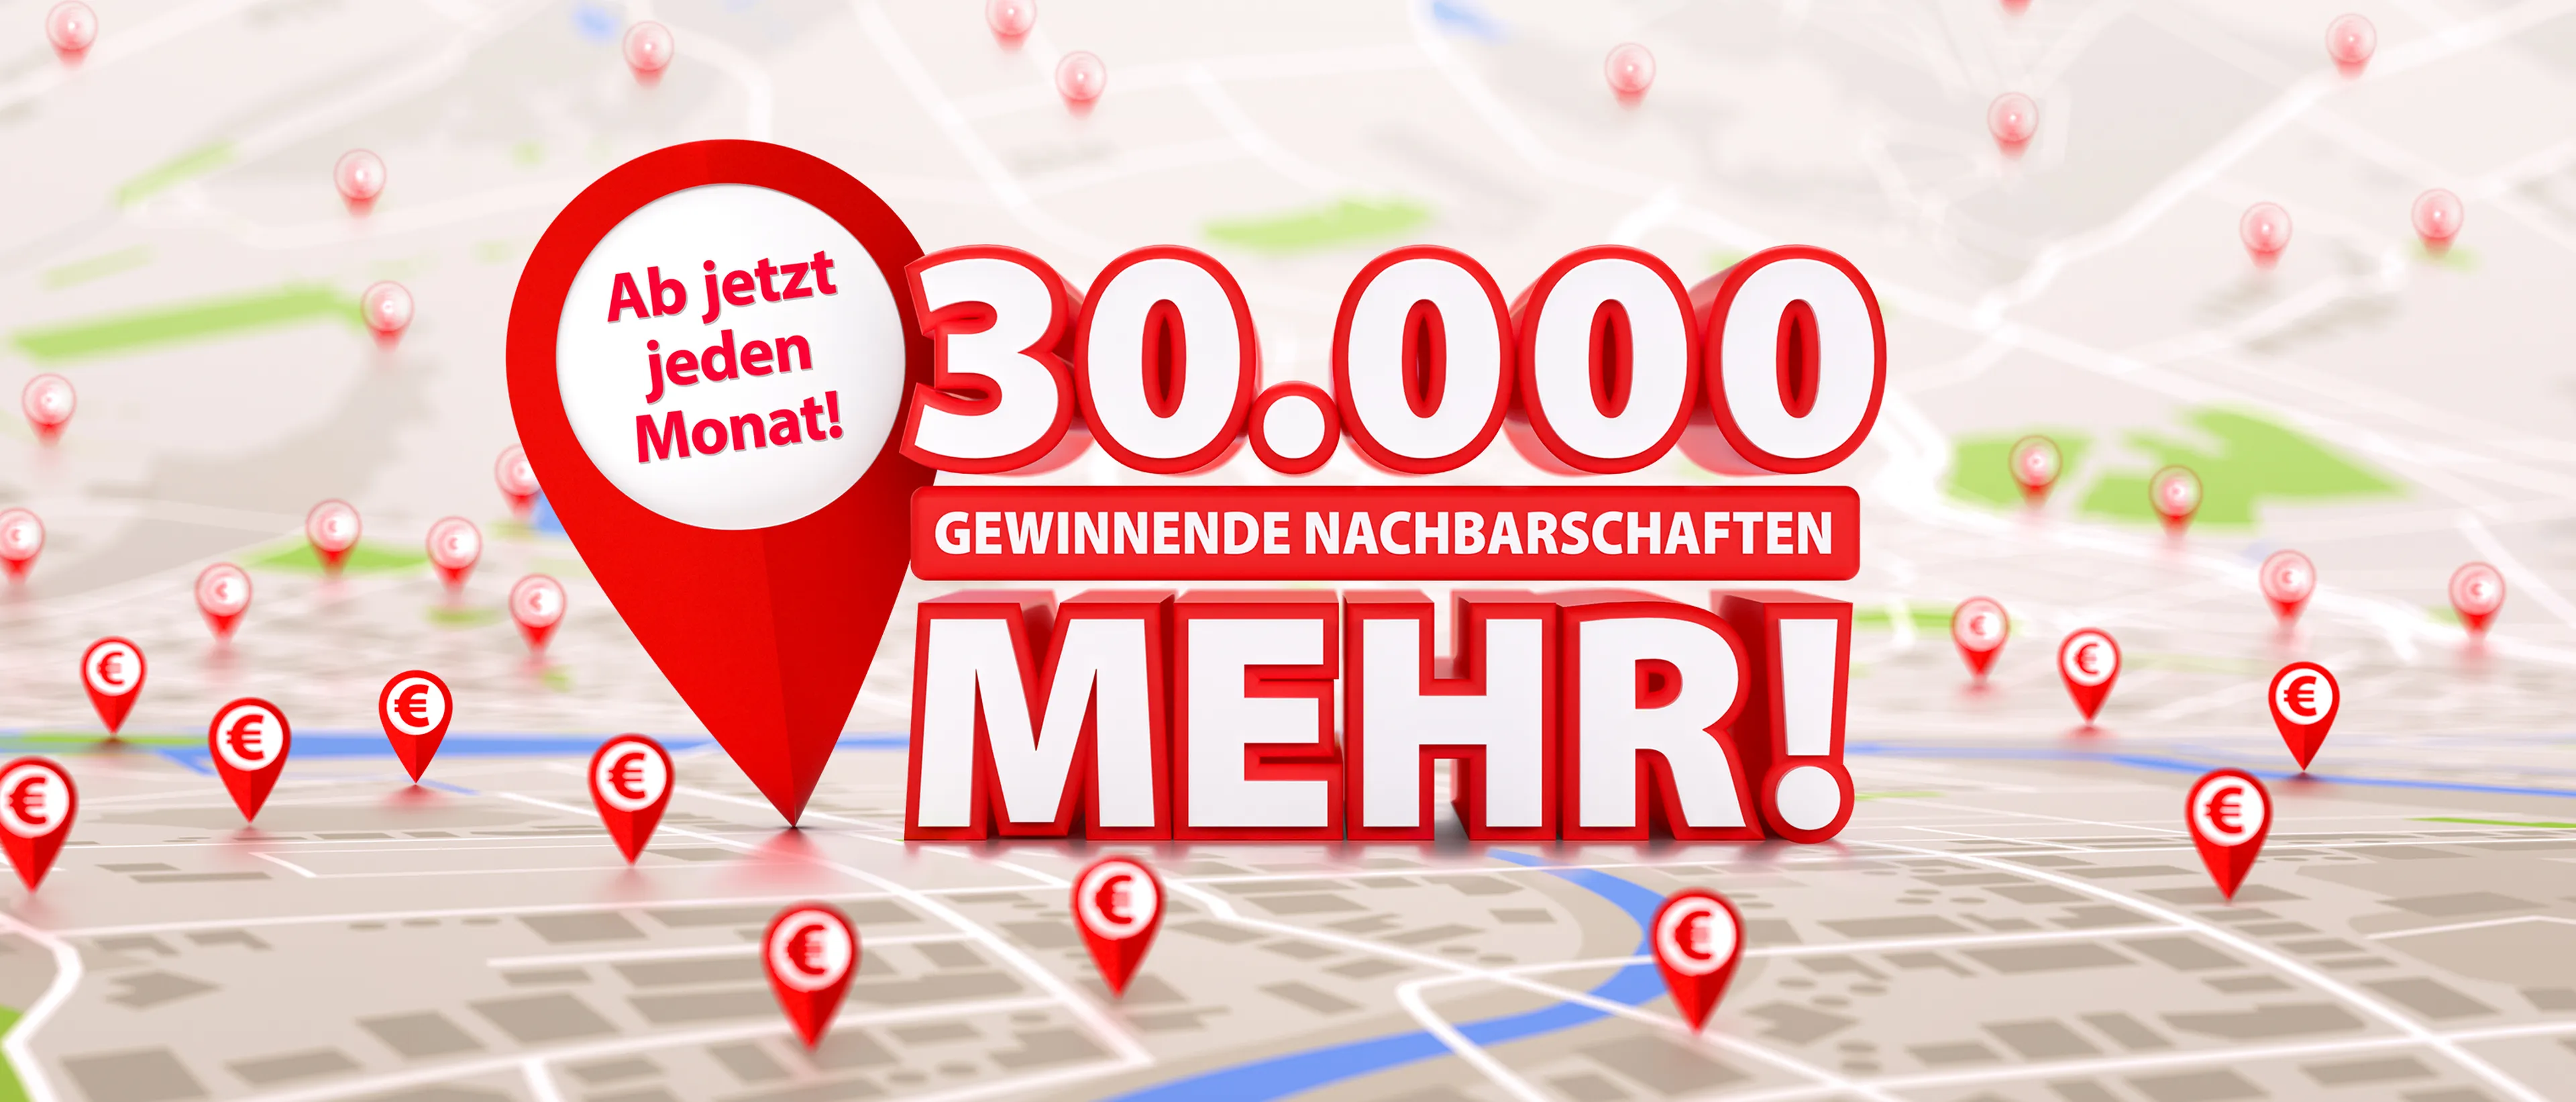 Ab jetzt jeden Monat 30.000 gewinnende Nachbarschaften mehr bei der Deutschen Postcode Lotterie!